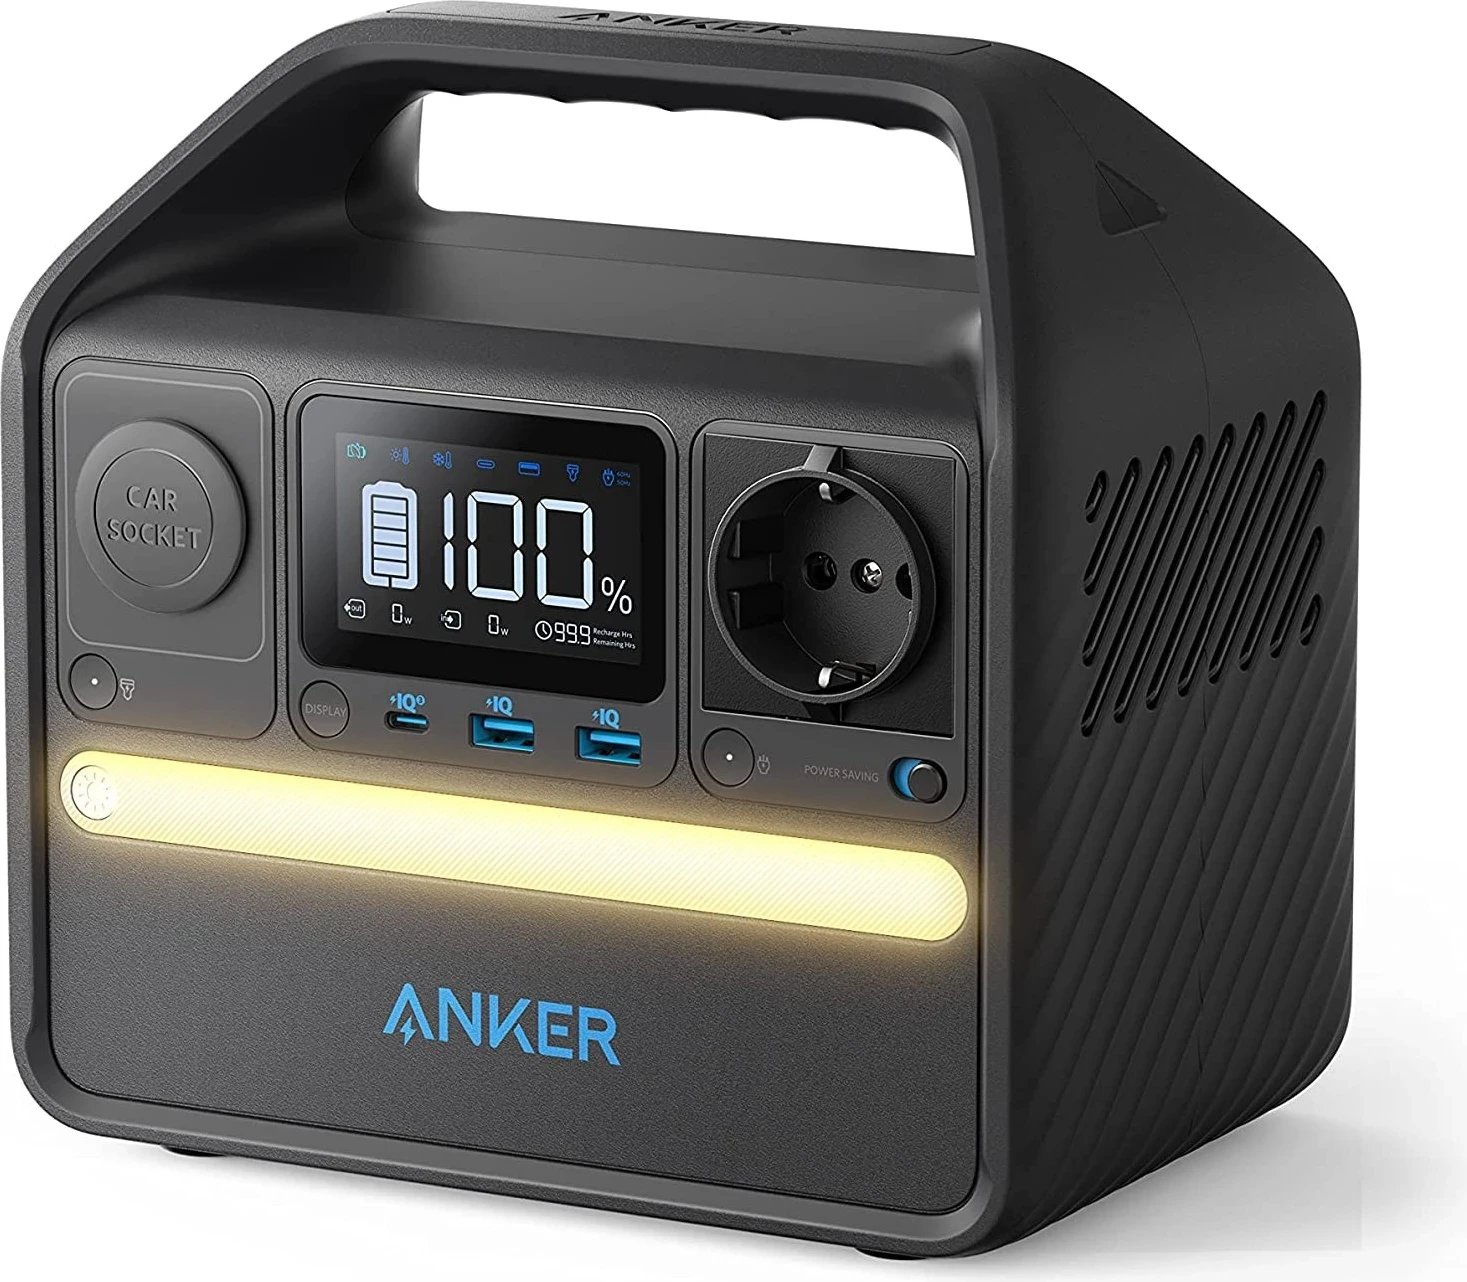 Stacioni portativ i energjisë Anker 521 PowerHouse, 200W, 256Wh, LiFePO4, ngjyrë e zezë